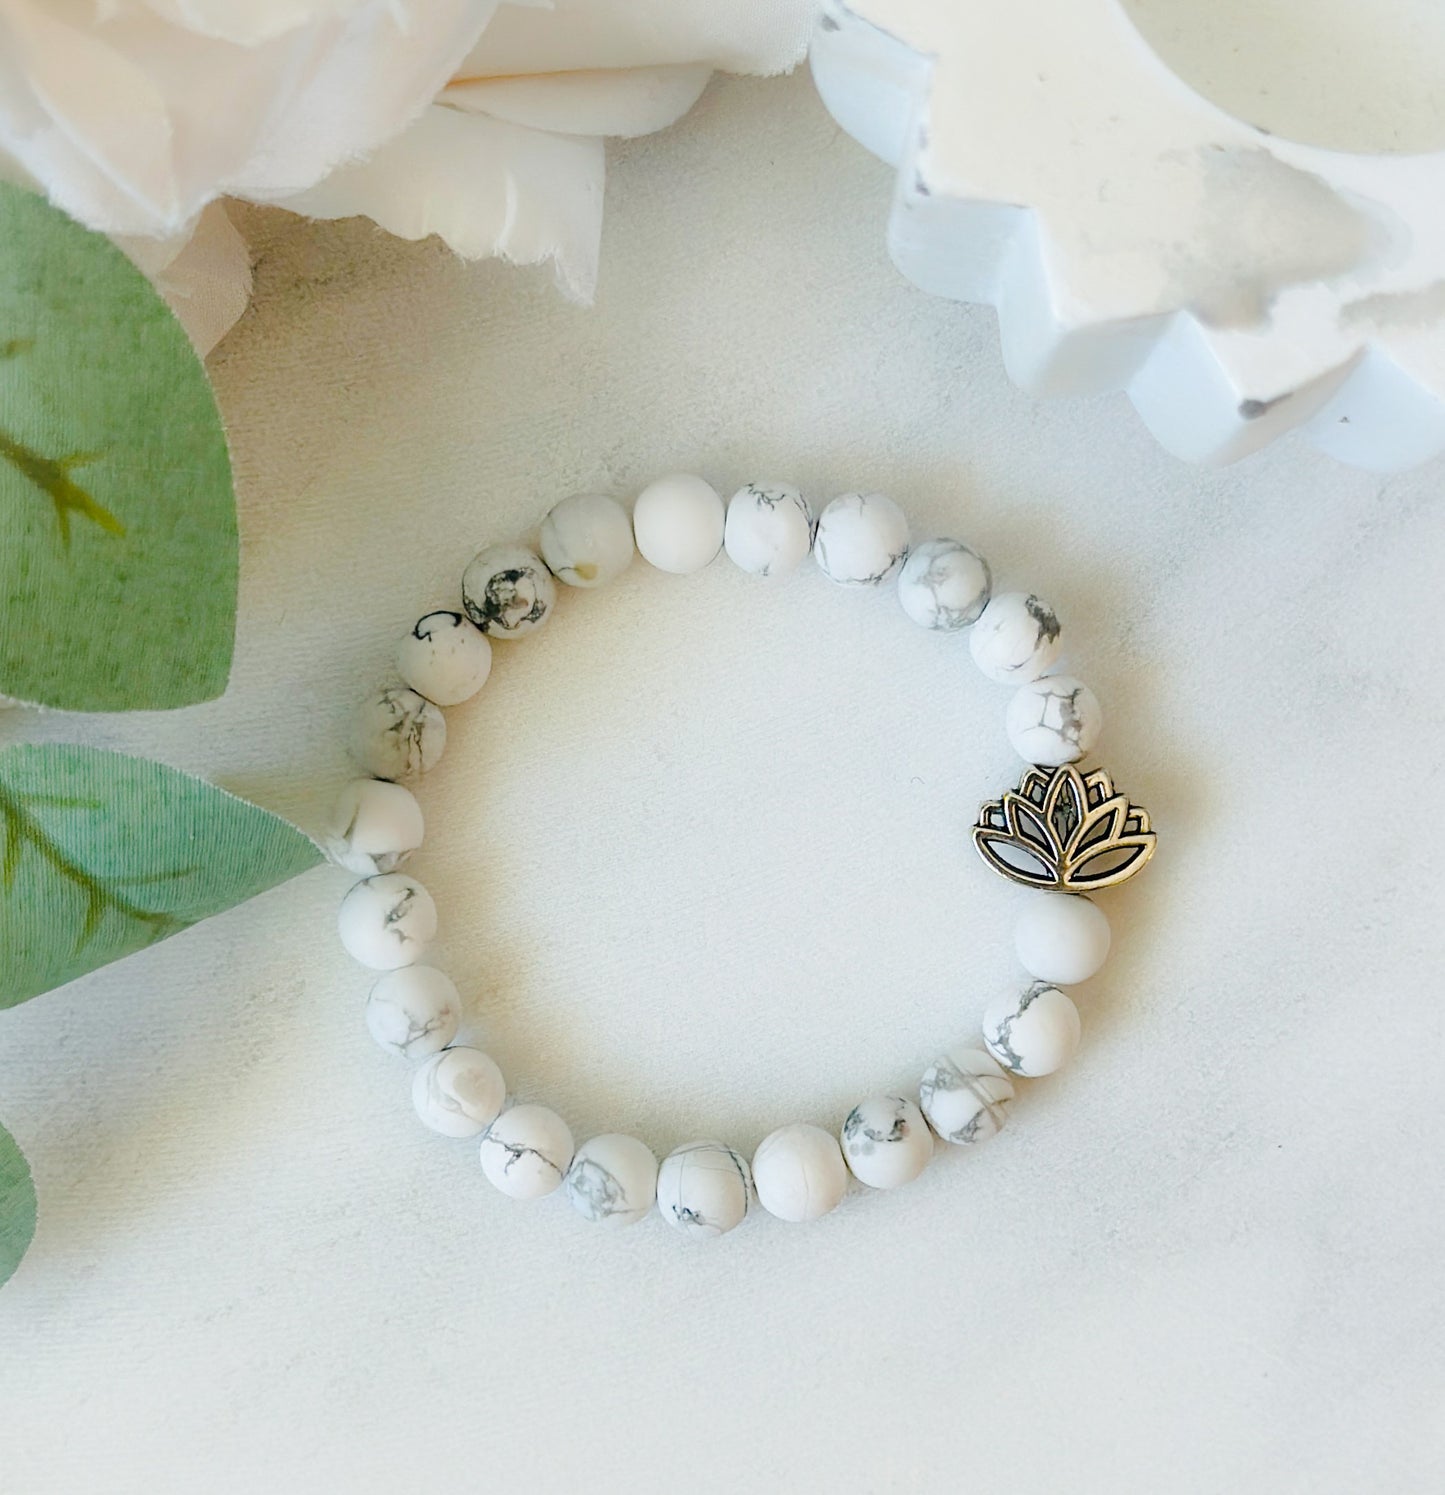 The white lotus bracelet